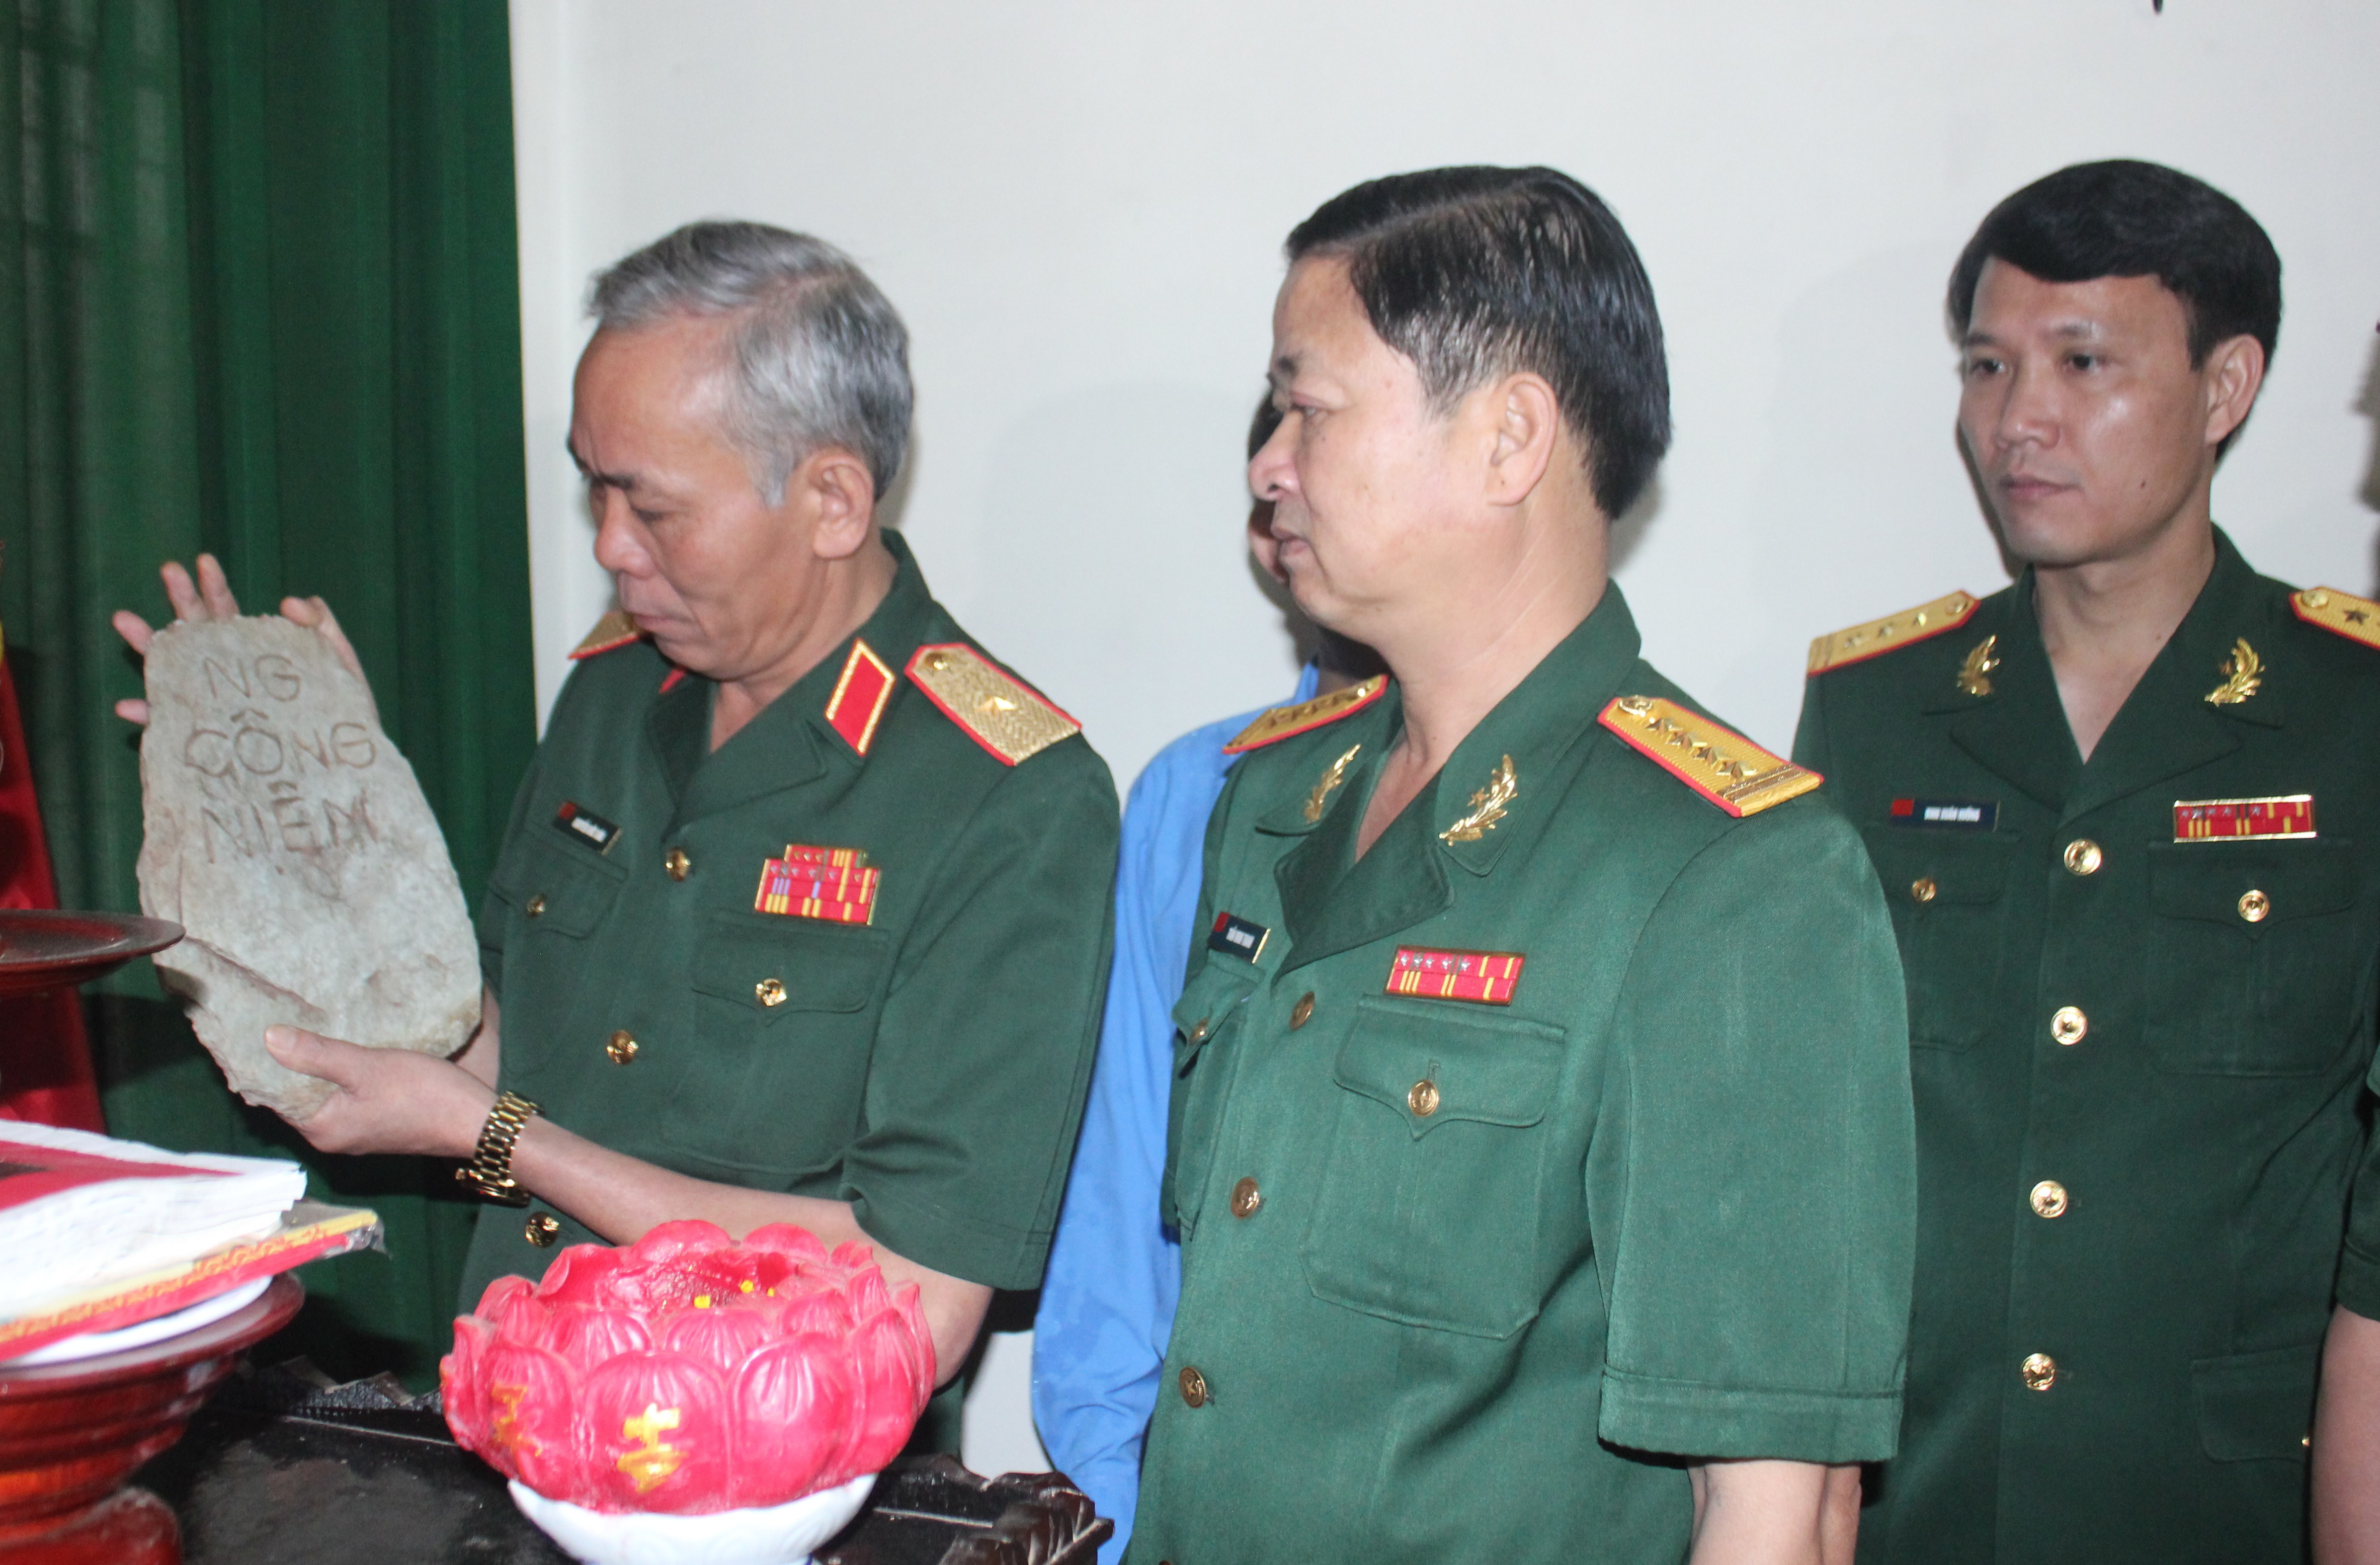 Ban chỉ đạo 1237 Quân khu kiểm tra các di vật liệt sỹ được Đội quy tập Bộ CHQS tỉnh Nghệ An tìm kiếm, cất bốc được trong màu khô 2017 - 2018. Ảnh: Trần Dũngg